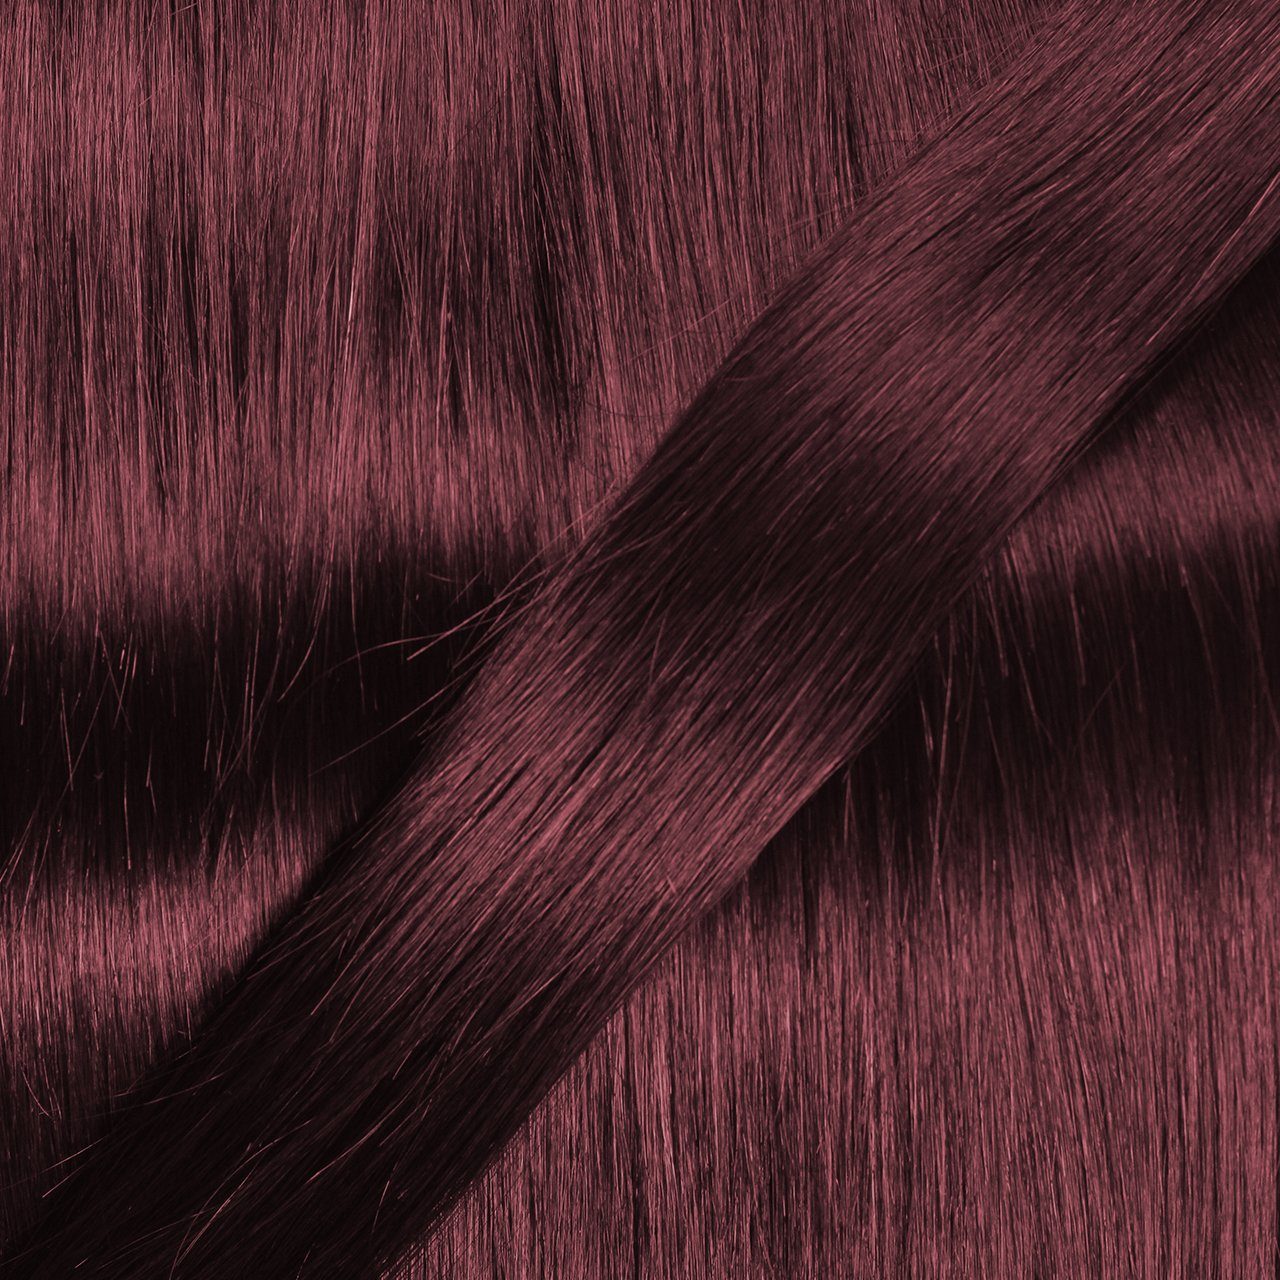 Echthaartresse Hellbraun Violett hair2heart 30cm Premium Echthaar-Extension #55/66